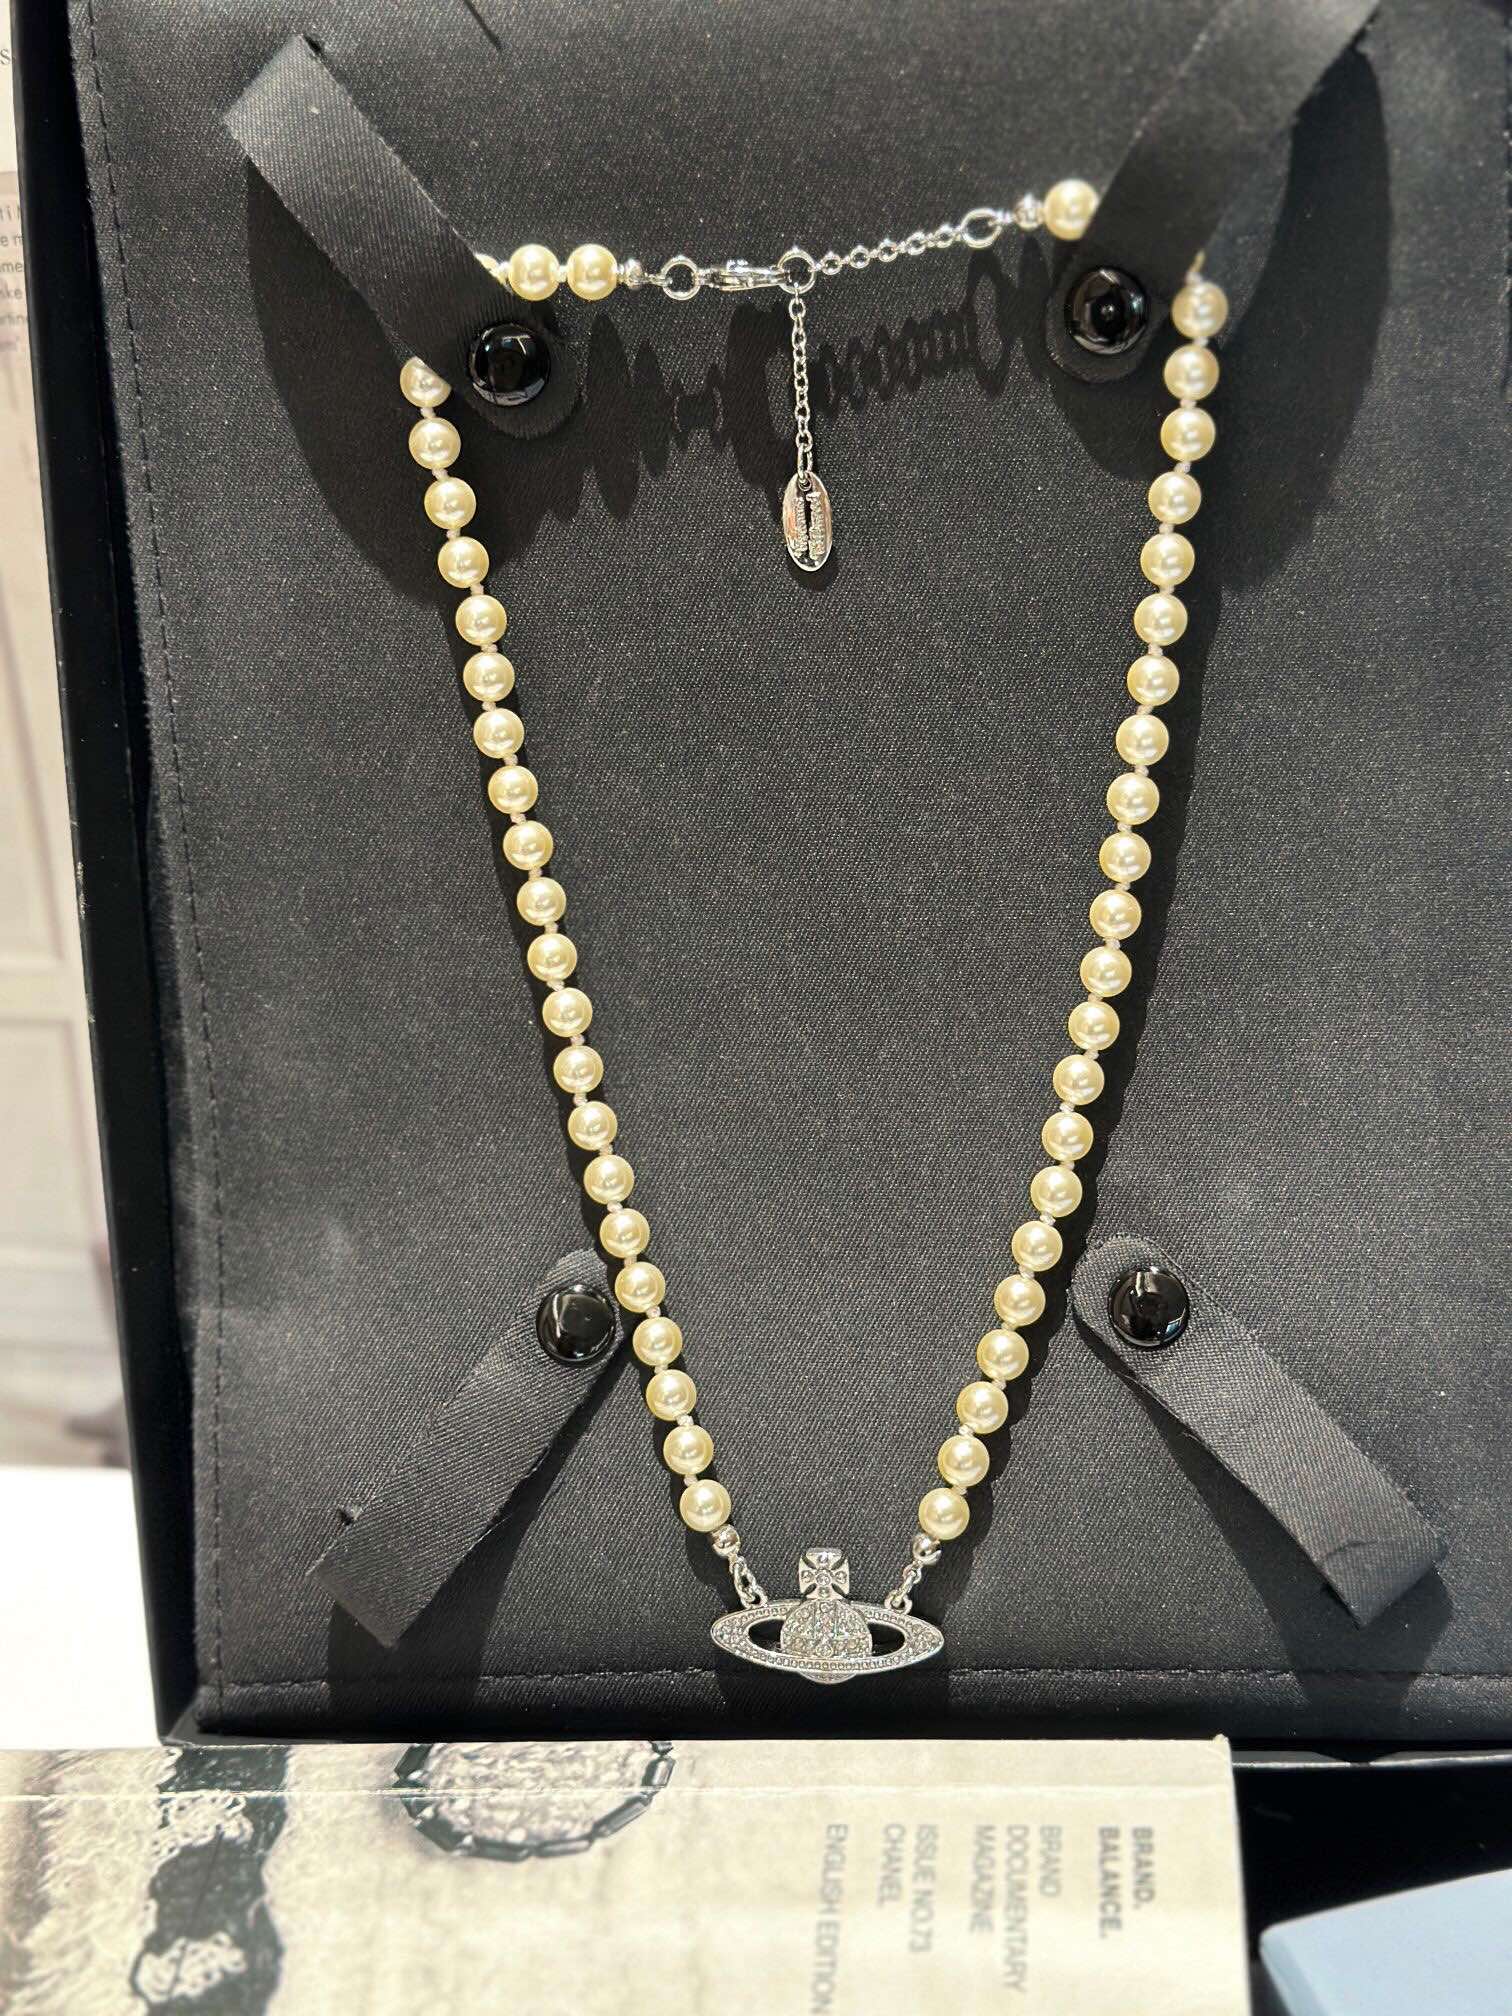 Vivienne Westwood Jewelry Necklaces & Pendants Replica Shop